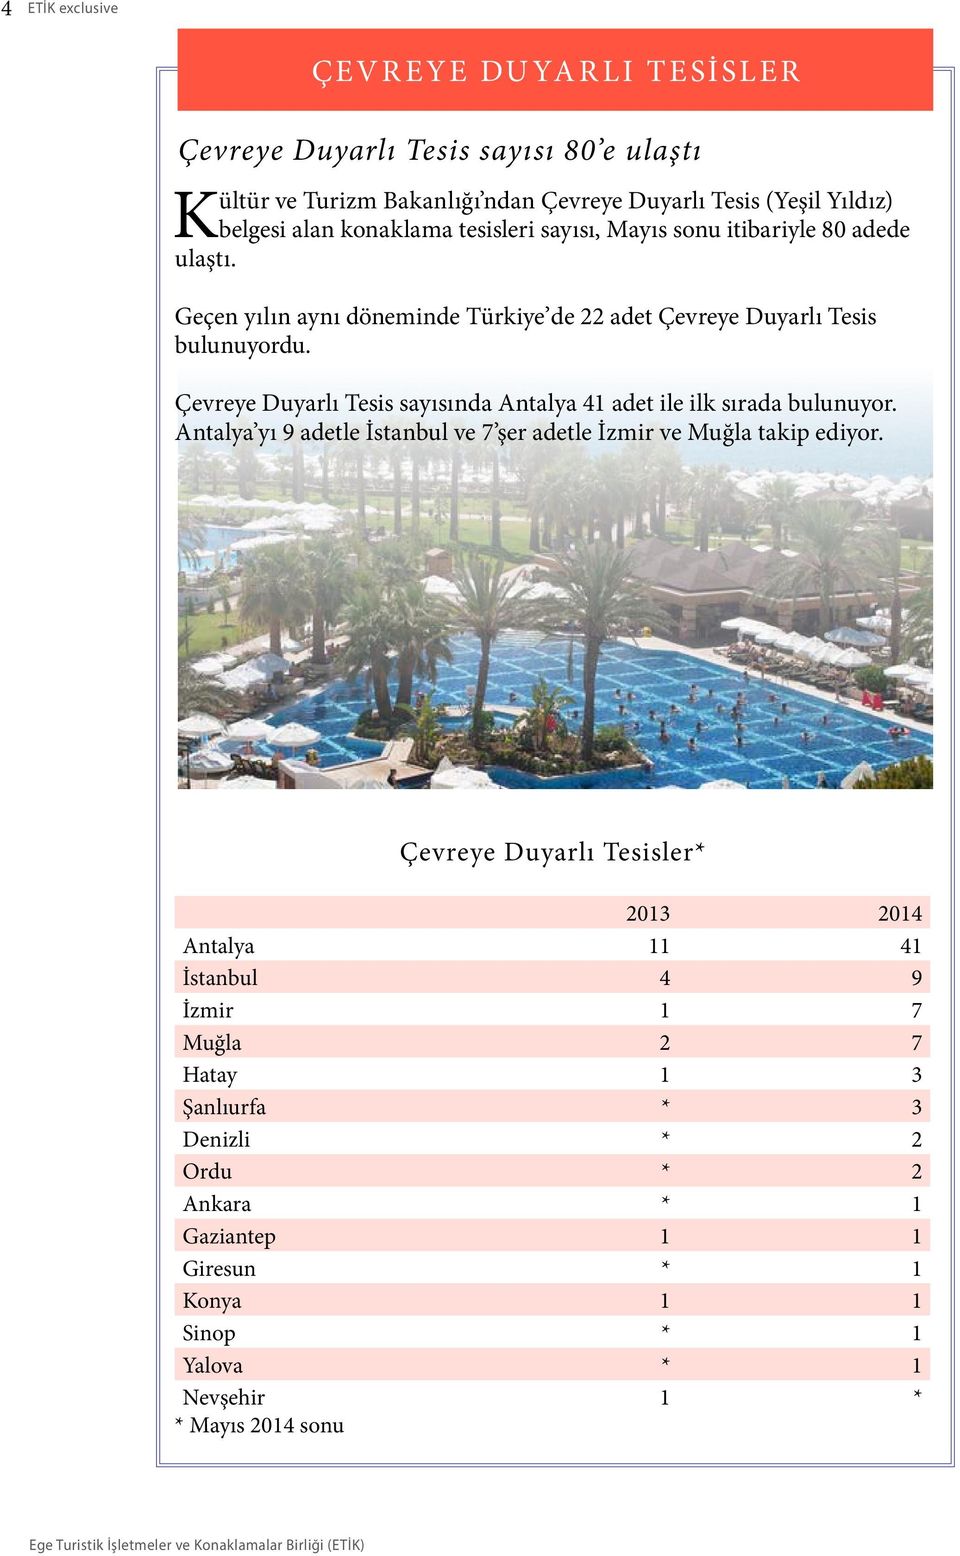 Çevreye Duyarlı Tesis sayısında Antalya 41 adet ile ilk sırada bulunuyor. Antalya yı 9 adetle İstanbul ve 7 şer adetle İzmir ve Muğla takip ediyor.